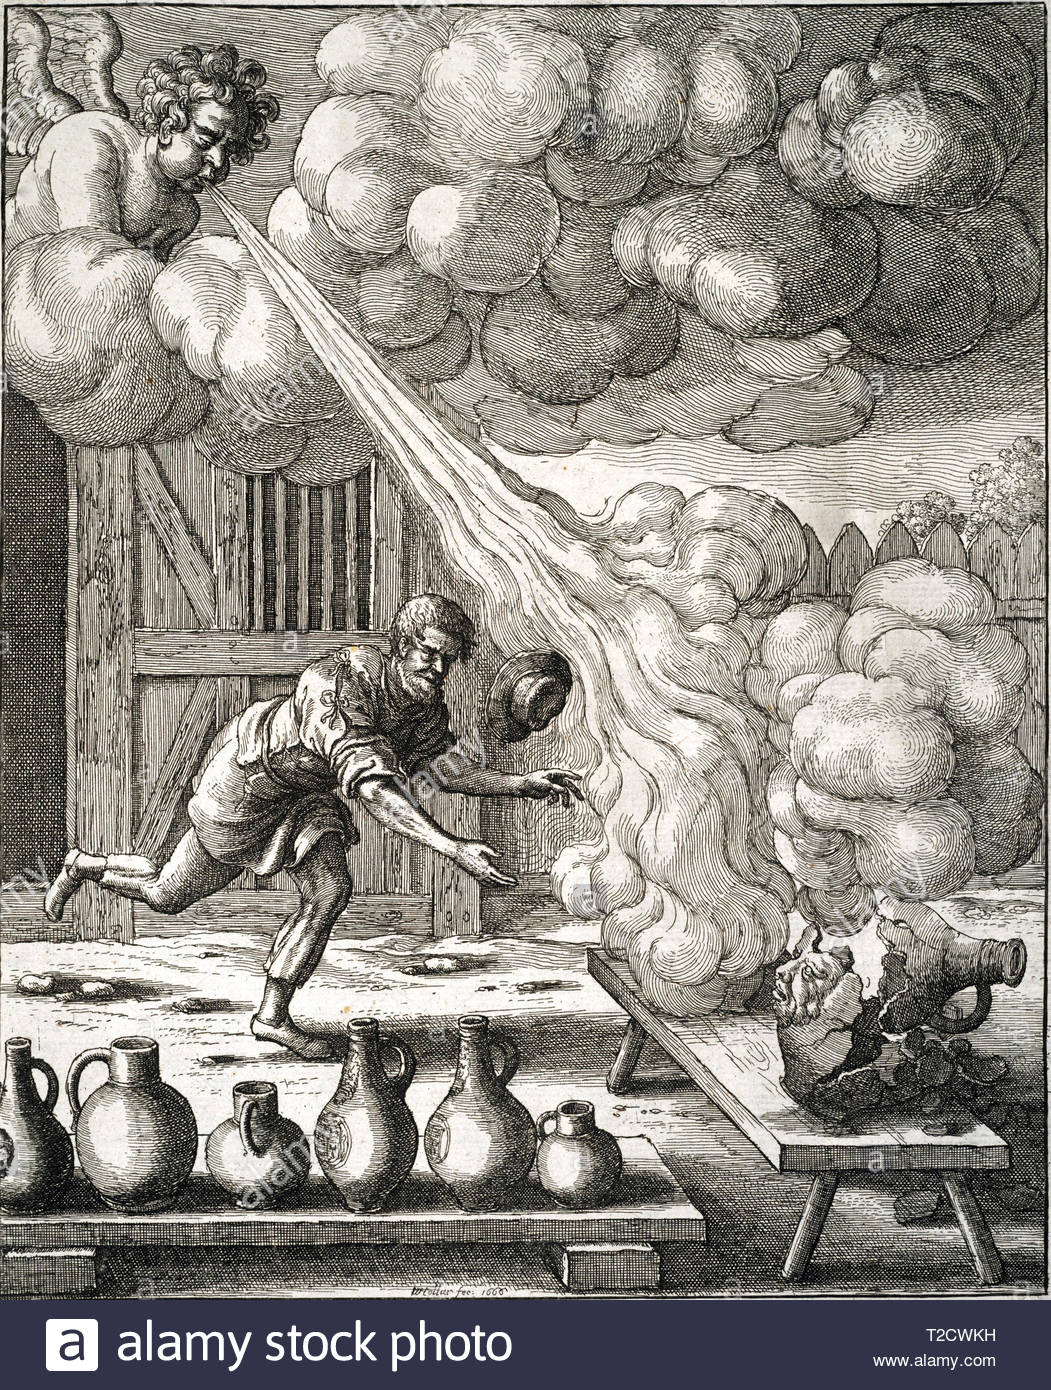 Le vent et la verseuse, illustration d'une fable par John Catholicus, gravure par Wenceslaus Hollar aquafortiste bohème à partir de 1600 Banque D'Images